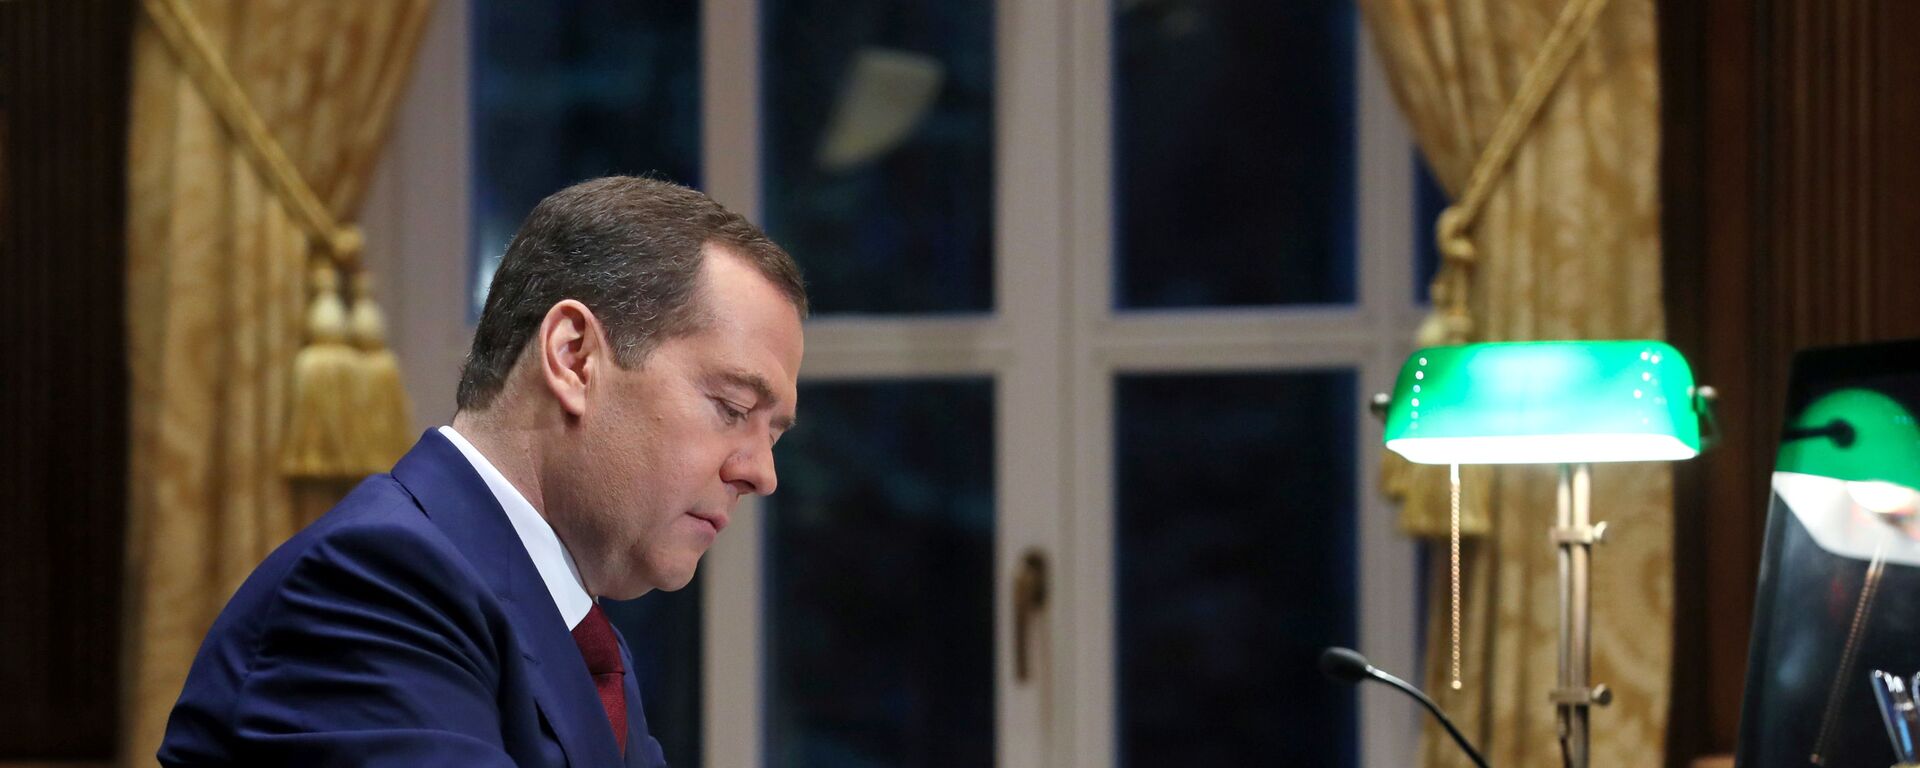 Председатель правительства РФ Дмитрий Медведев в рабочем кабинете в подмосковной  резиденции Горки. - Sputnik Армения, 1920, 16.02.2021